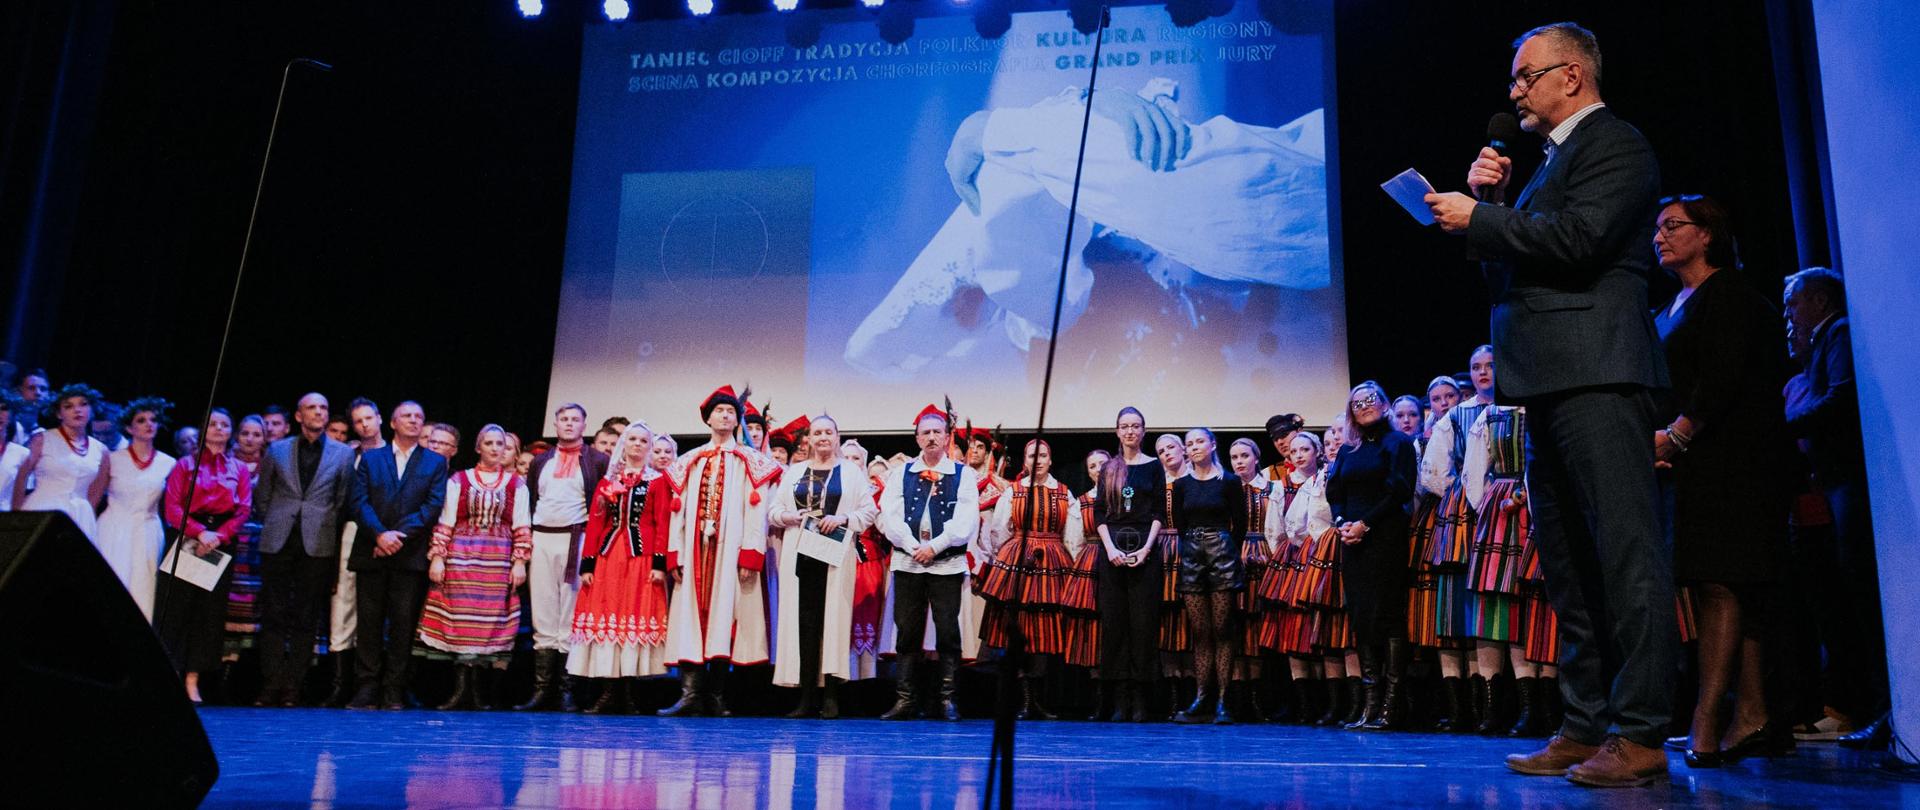 Scena sokołowskiego Ośrodka kultury, a na niej tancerze w różnych strojach ludowych, którzy uczestniczyli w koncercie finałowym. Nad nimi ekran promocyjny z grafiką festiwalową. 